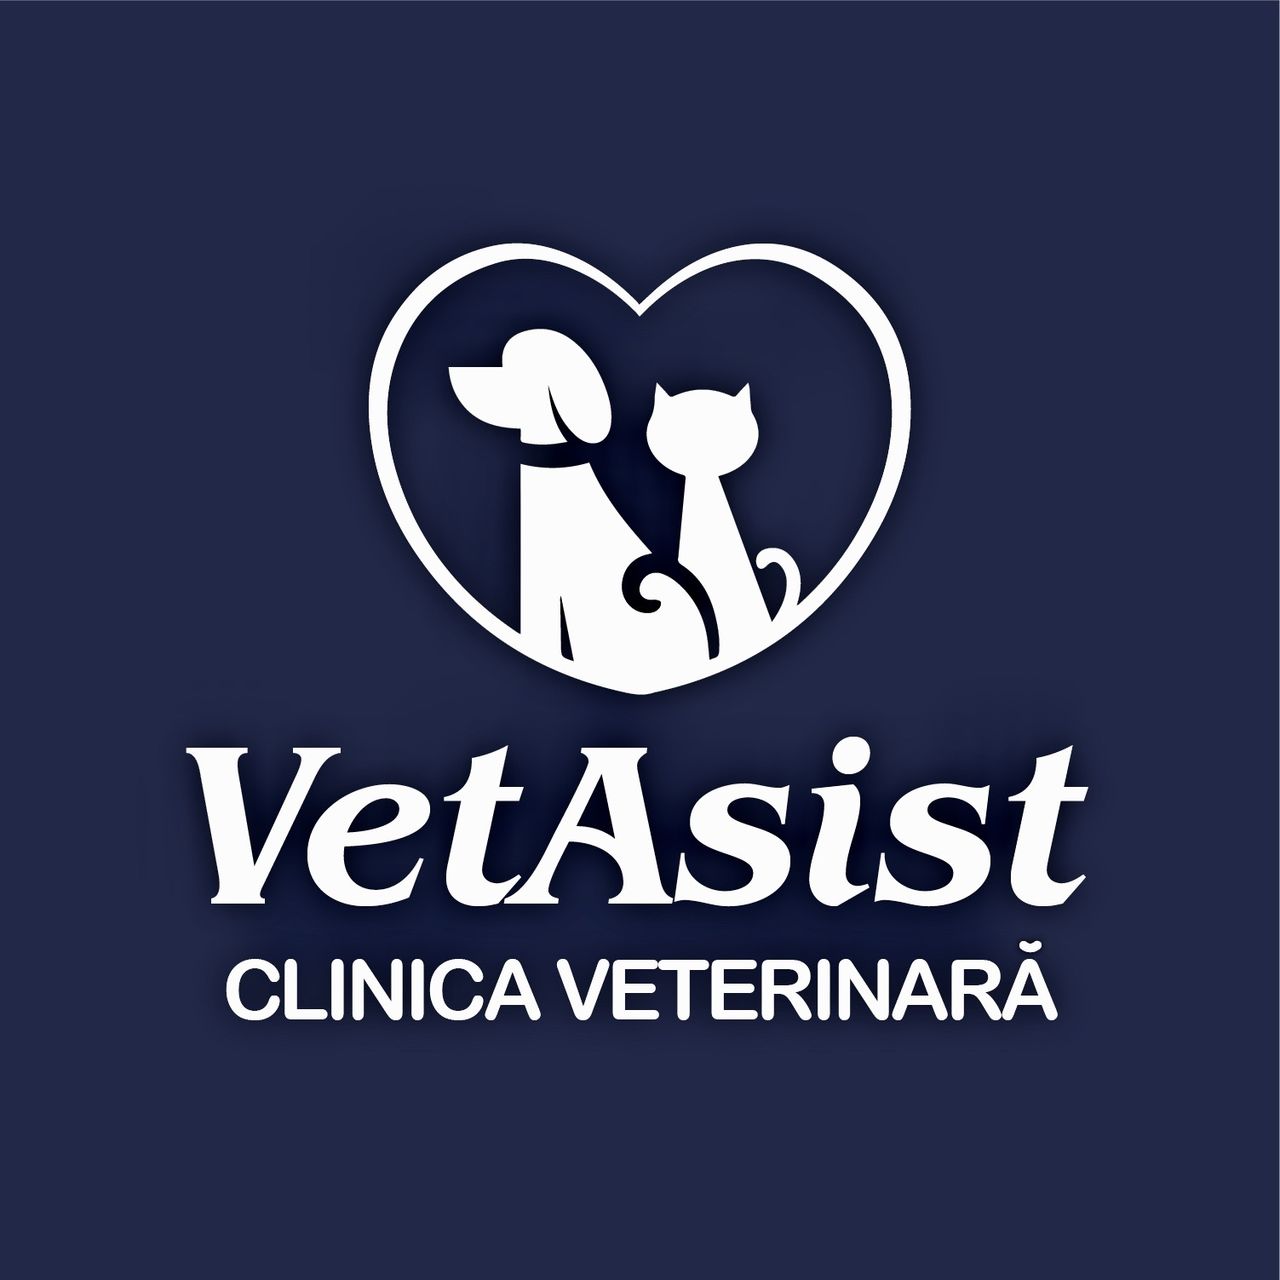 Clinica veterinara "vetasist" foto 9